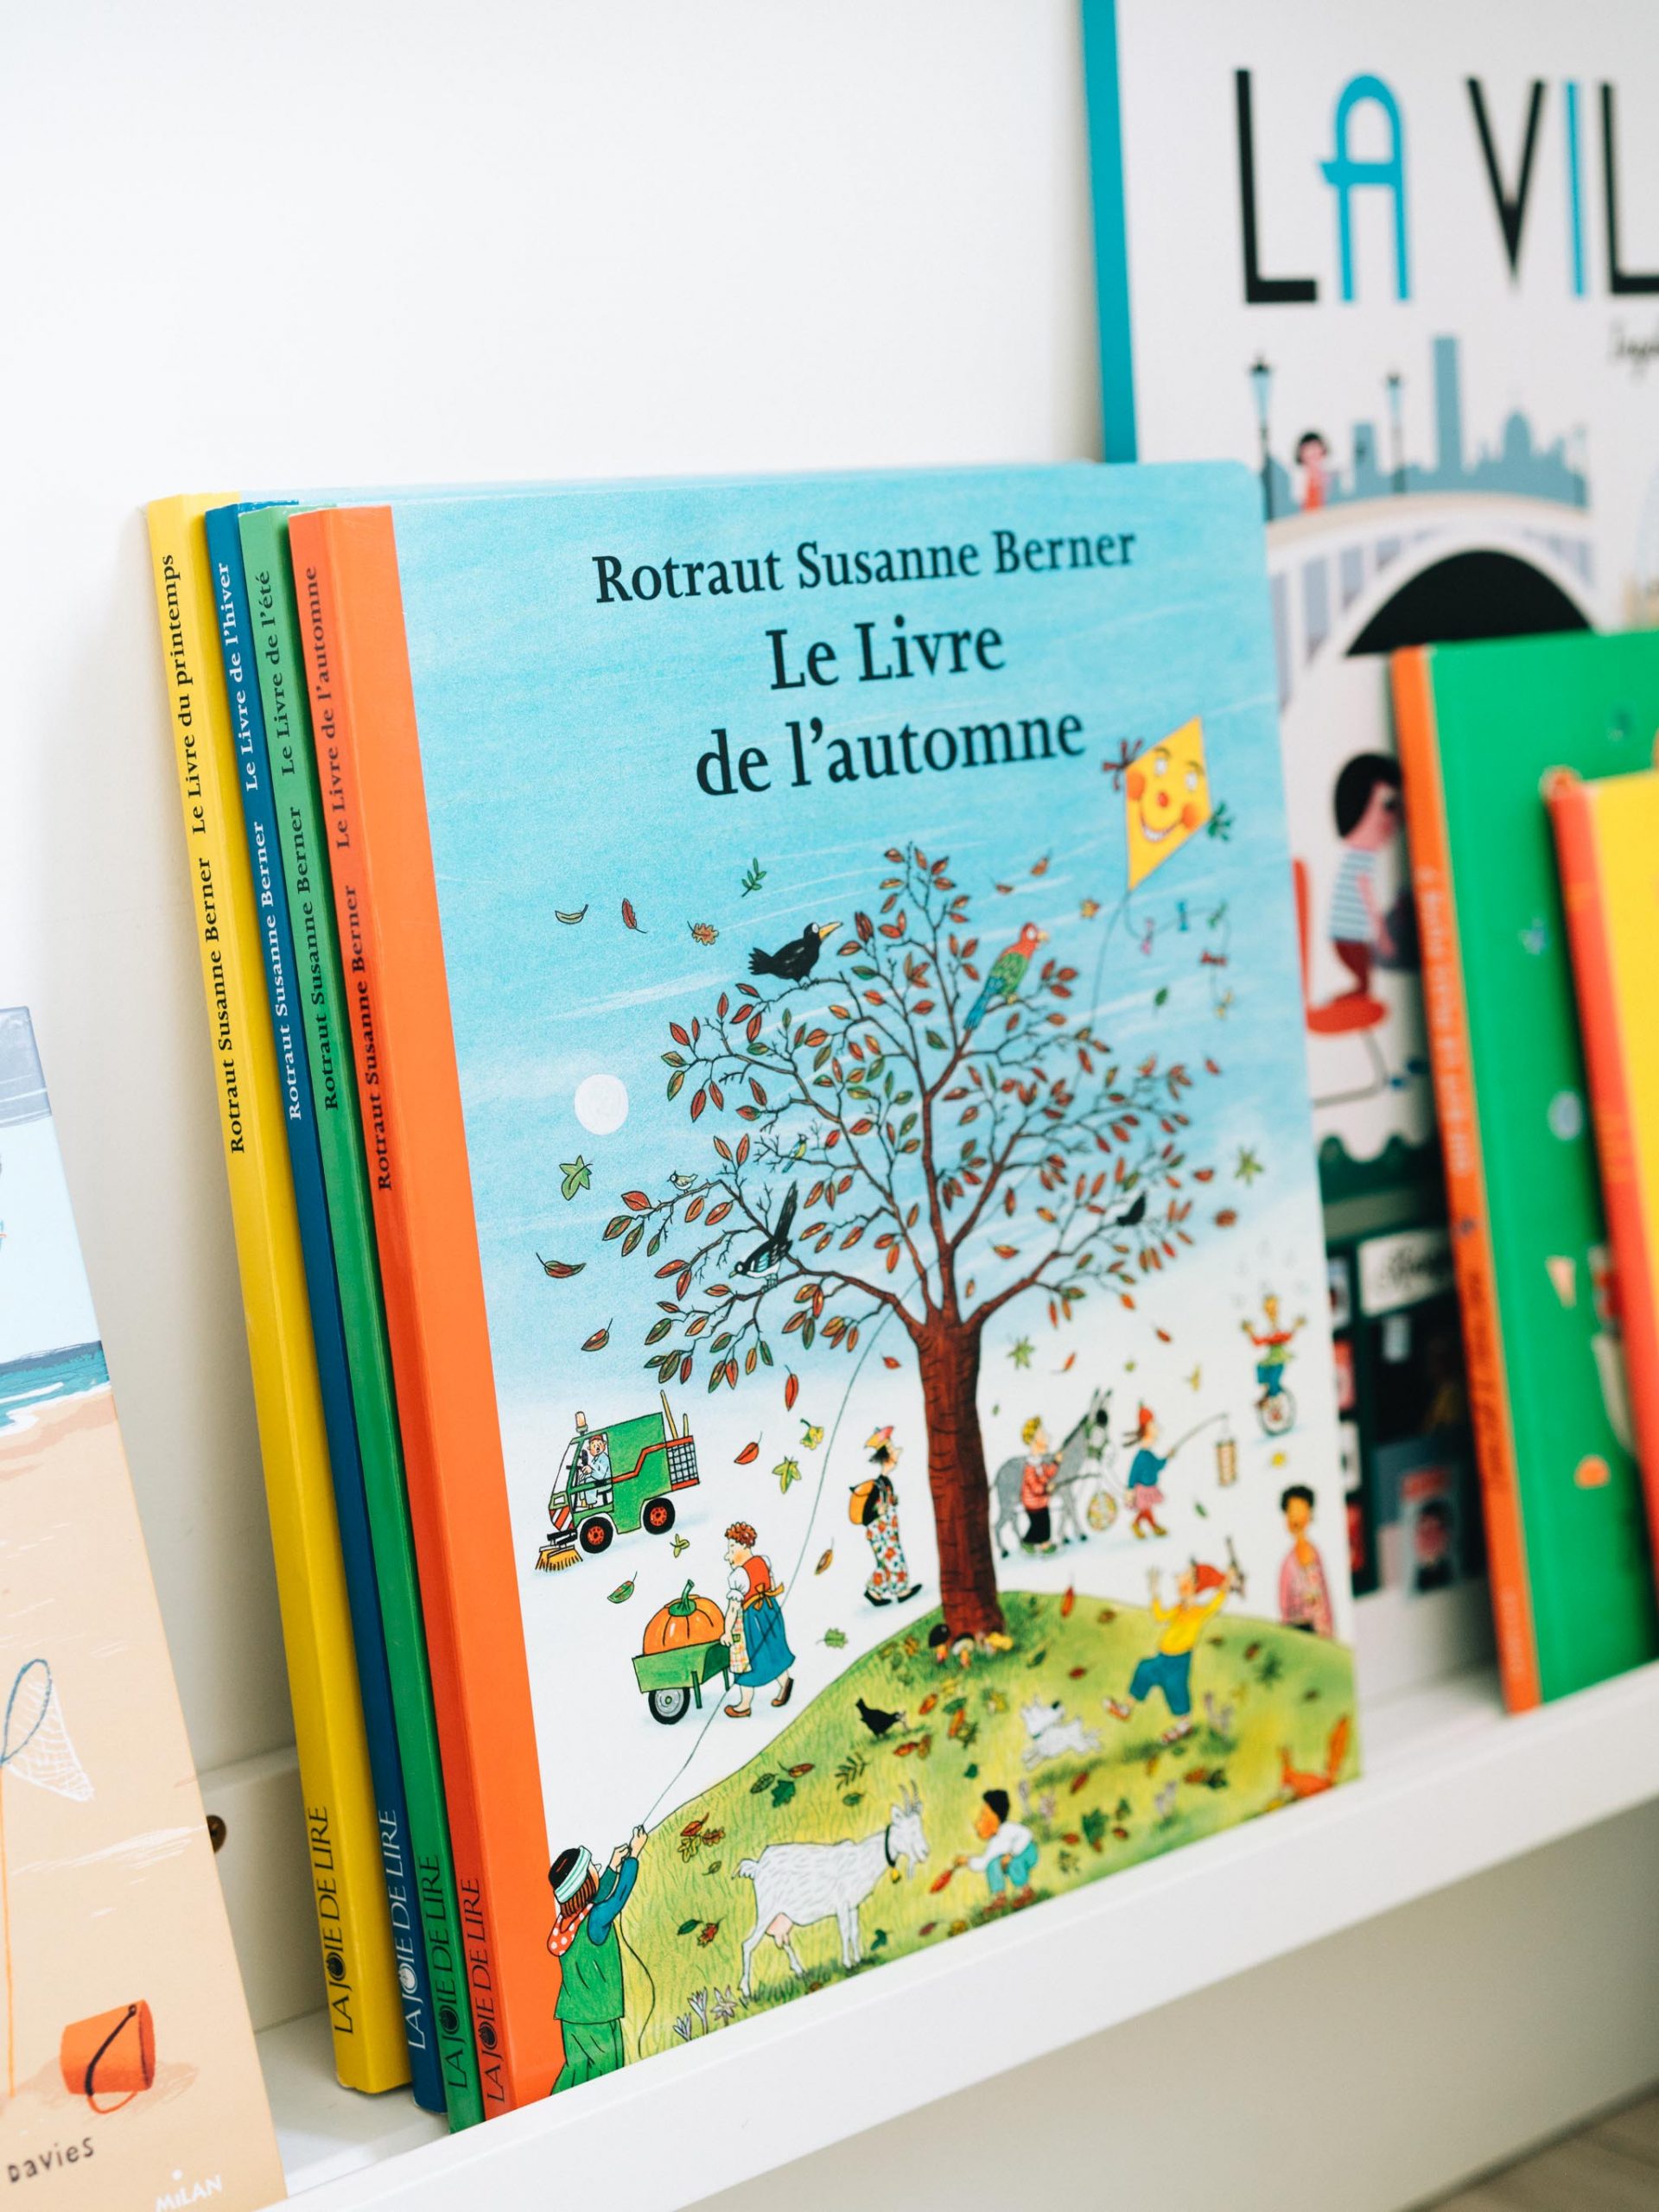 ② Lot de livres pour enfants de 3 à 6 ans — Livres pour enfants